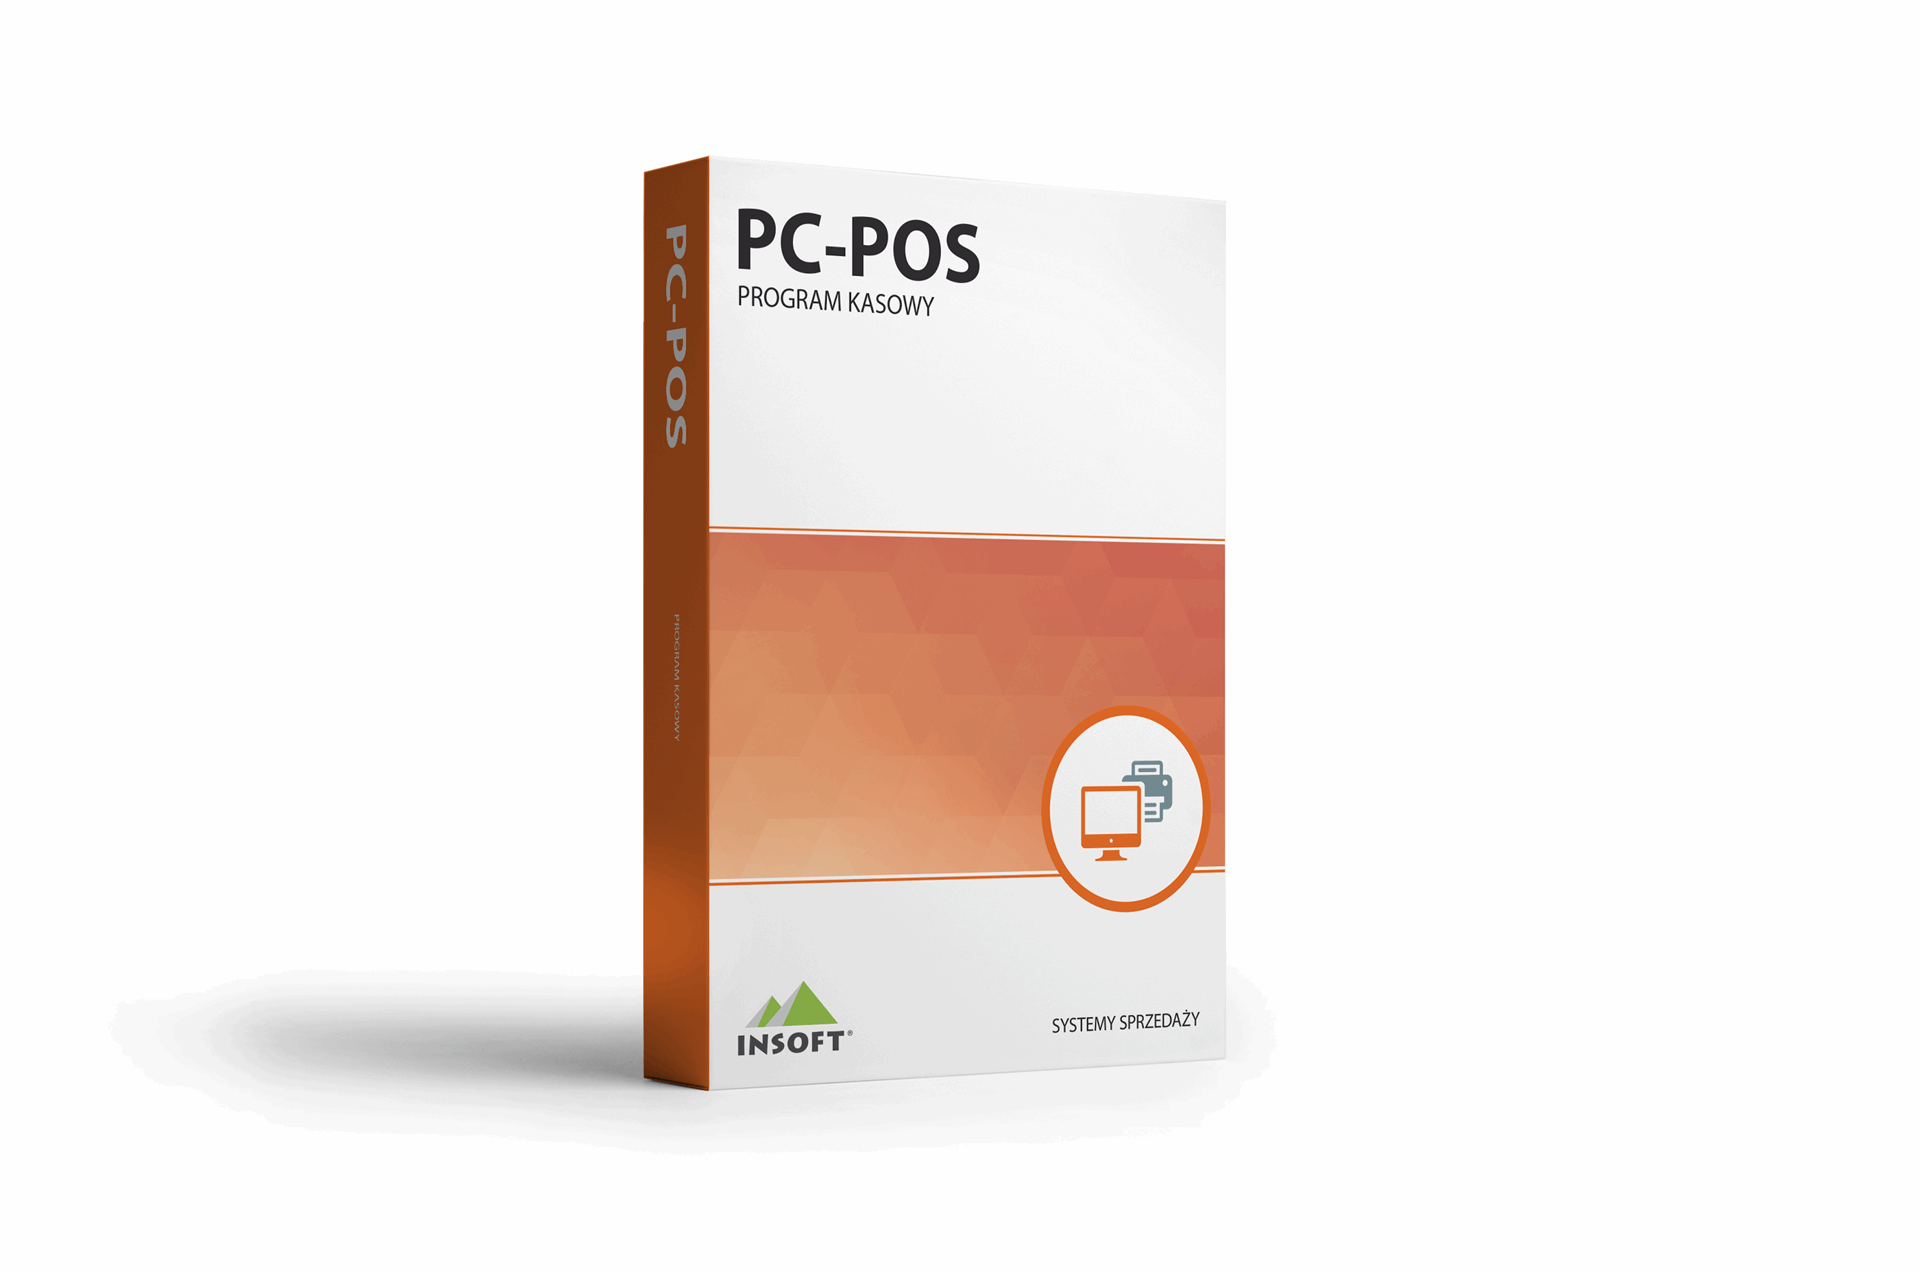 insoft/PC-POS L.png